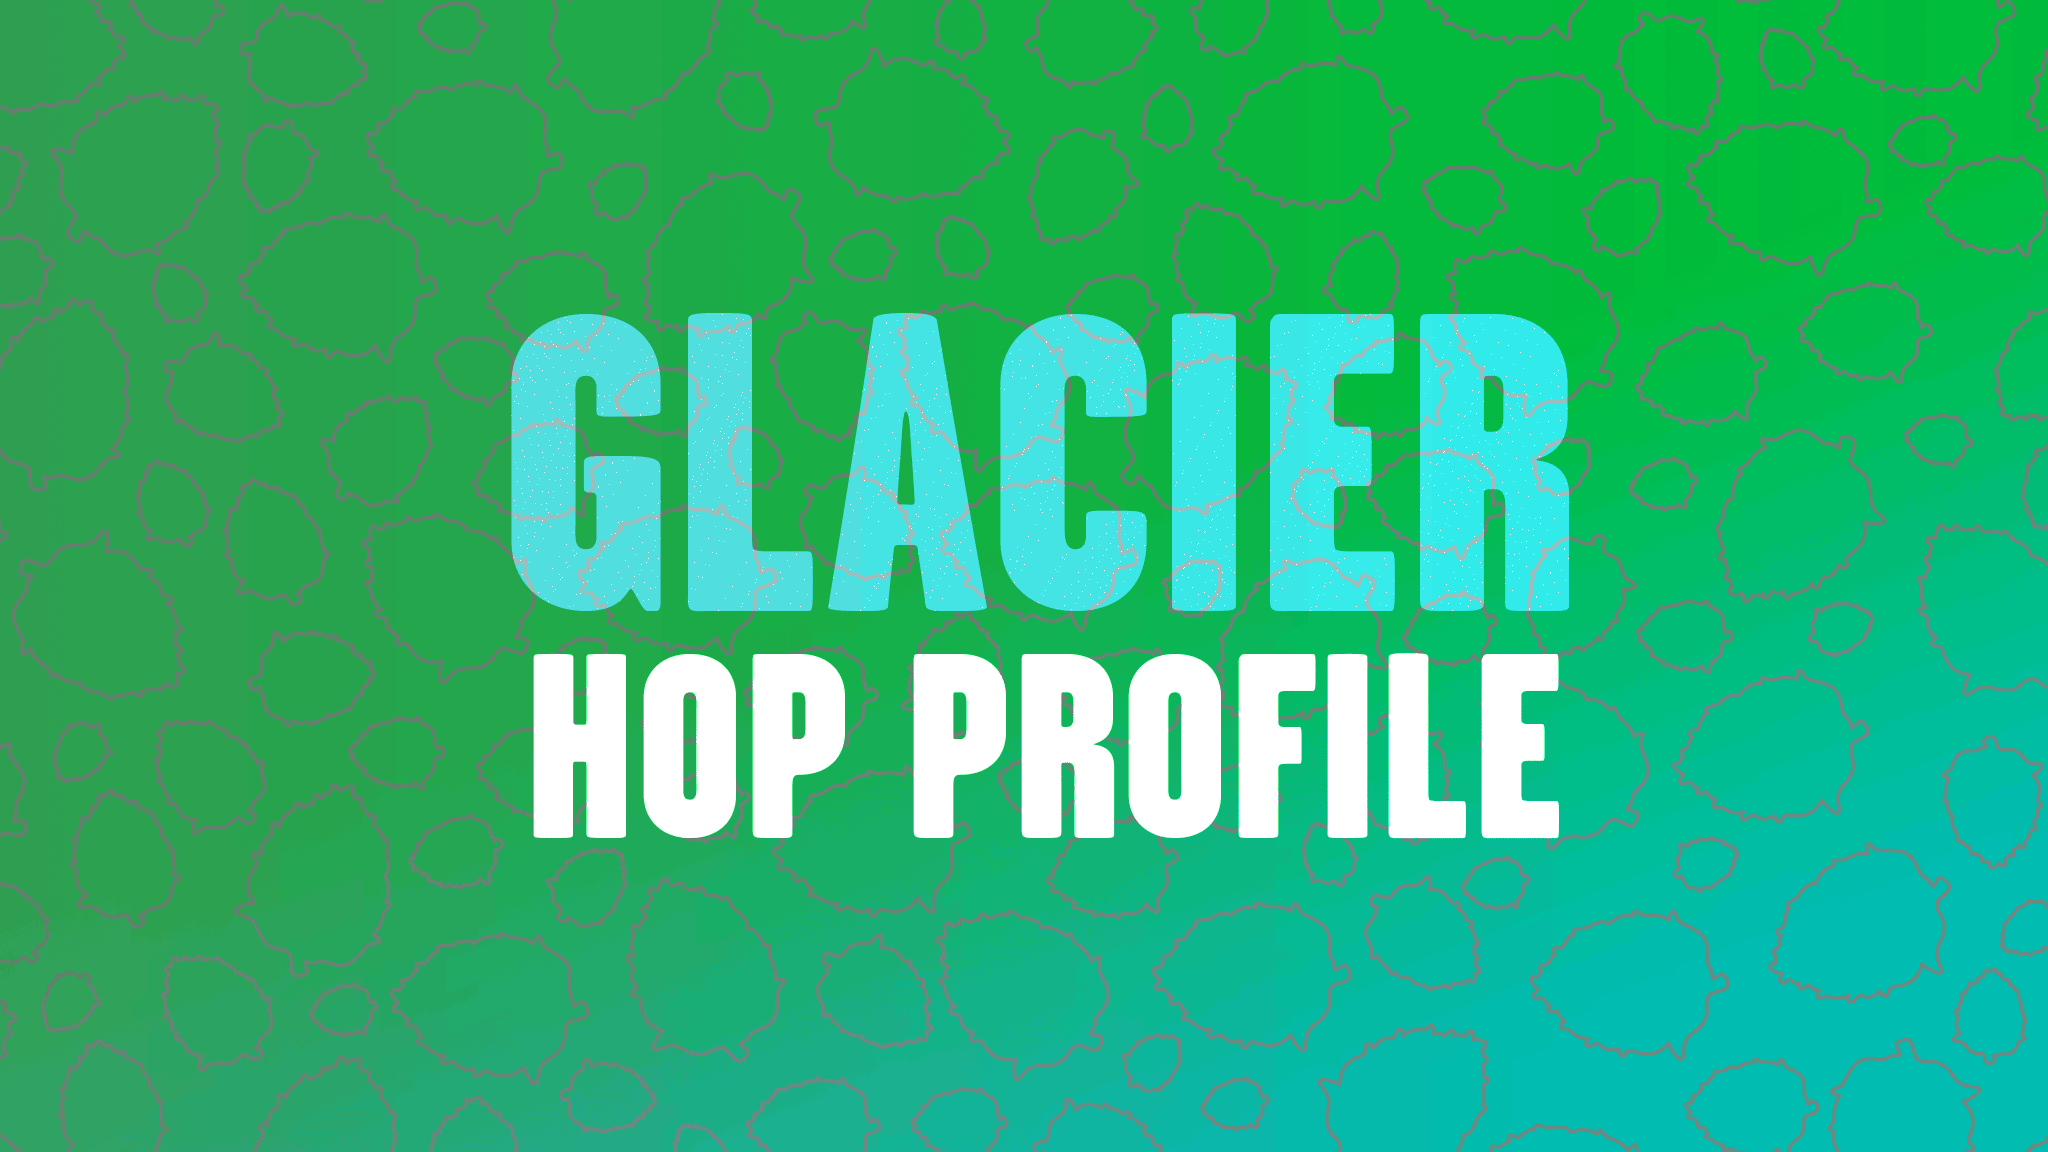 Hop Profile: Glacier